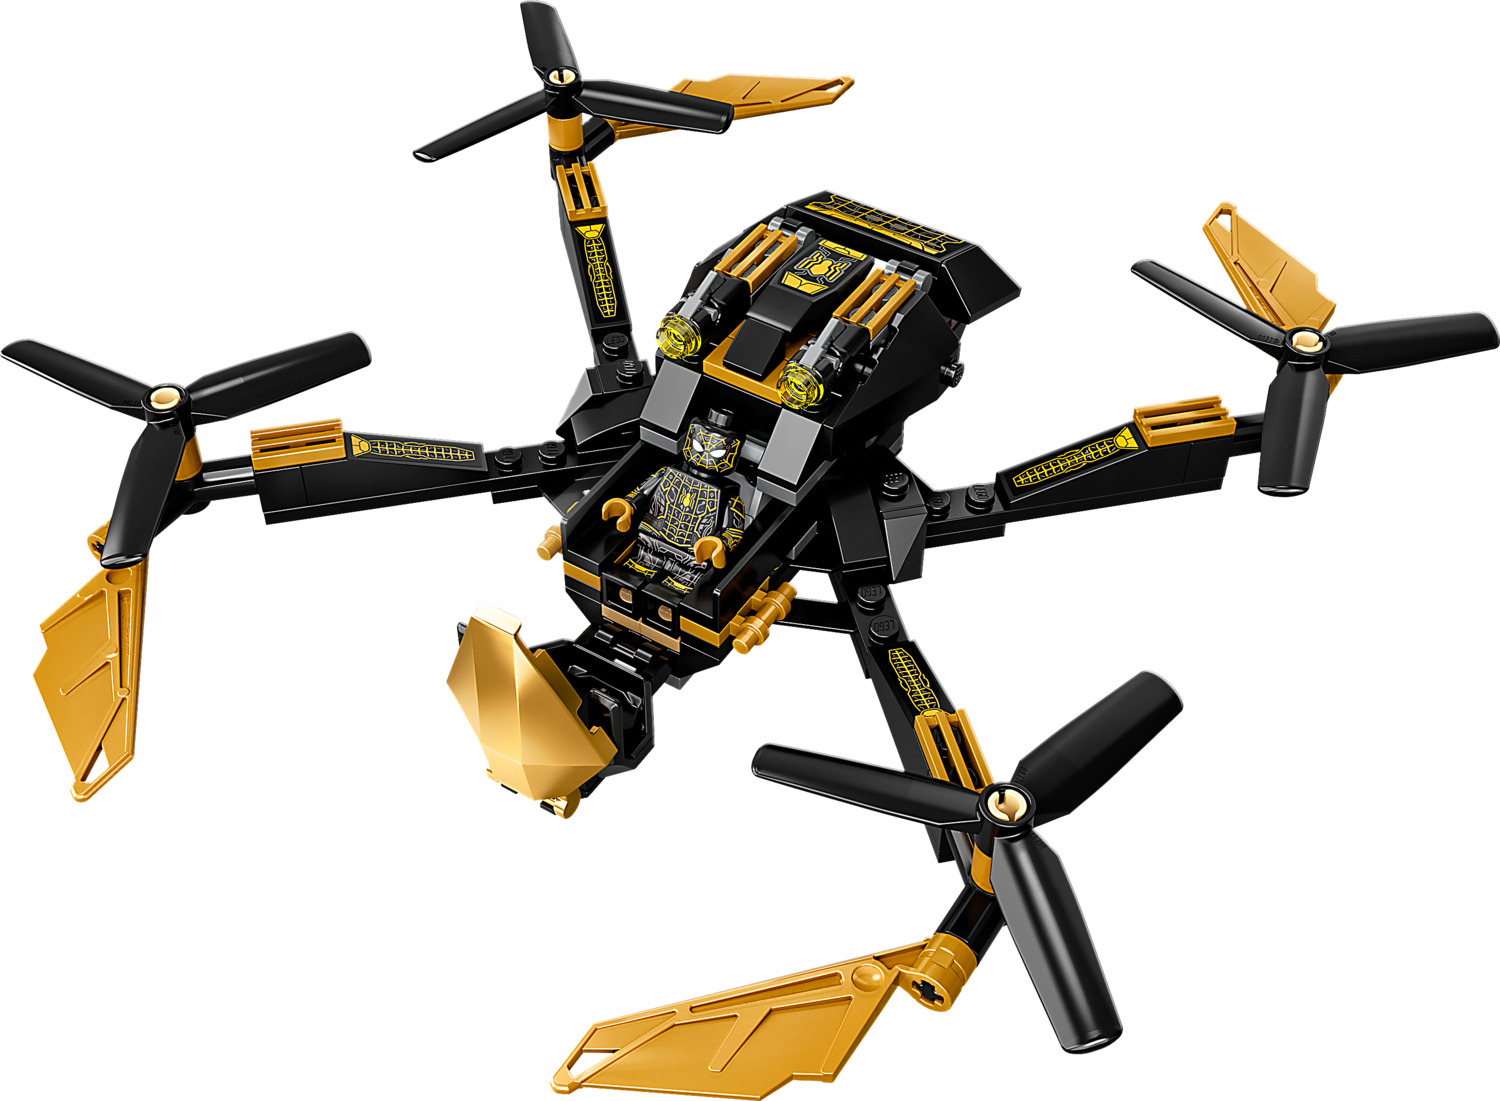 LEGO Spider-Man: Spider-Man's Drone Duel